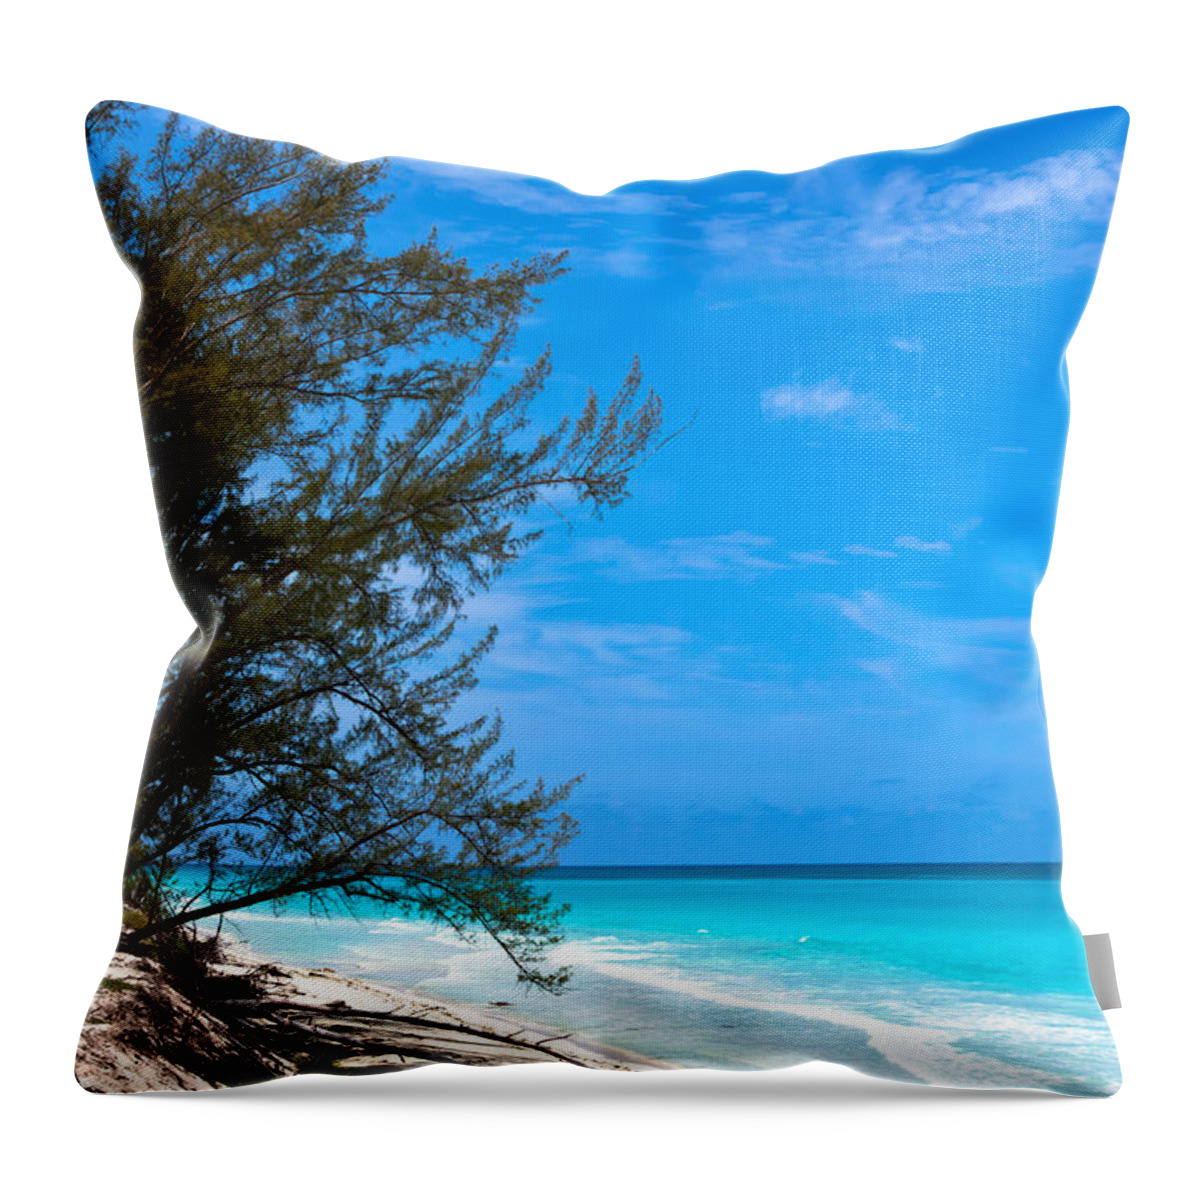 Aquamarine Throw Pillow featuring the photograph Bimini Beach by Ed Gleichman